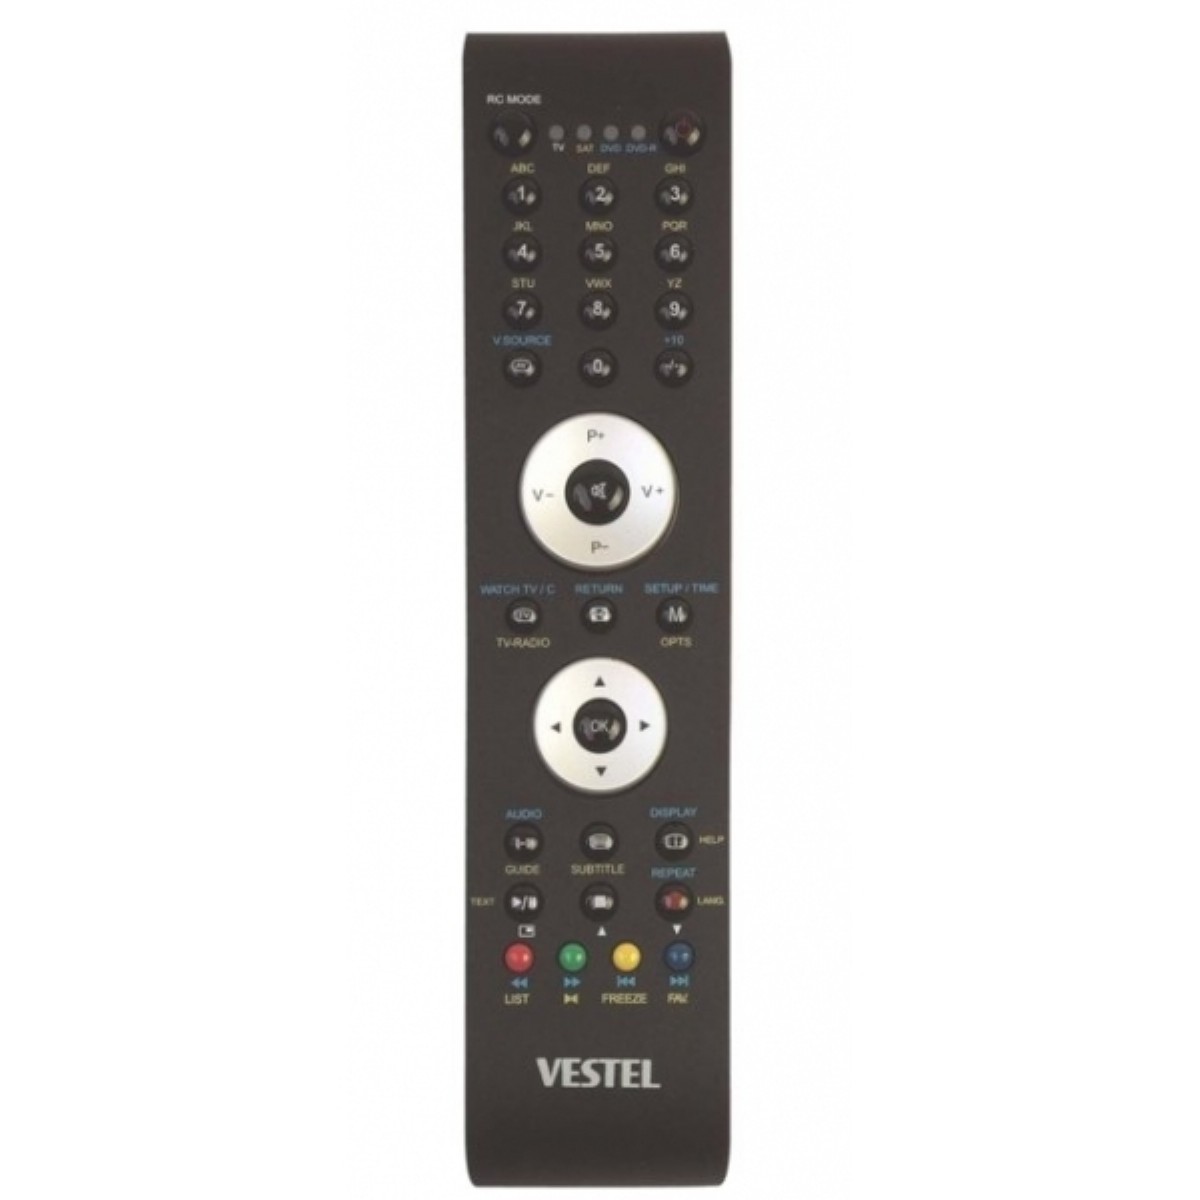 Пульт для телевизора vr. Vestel rc1110 телевизор. Пульт для телевизора Вестел 1110. Пульт для Vestel 32735 w. Vestel LCD TV 19884 пульт.